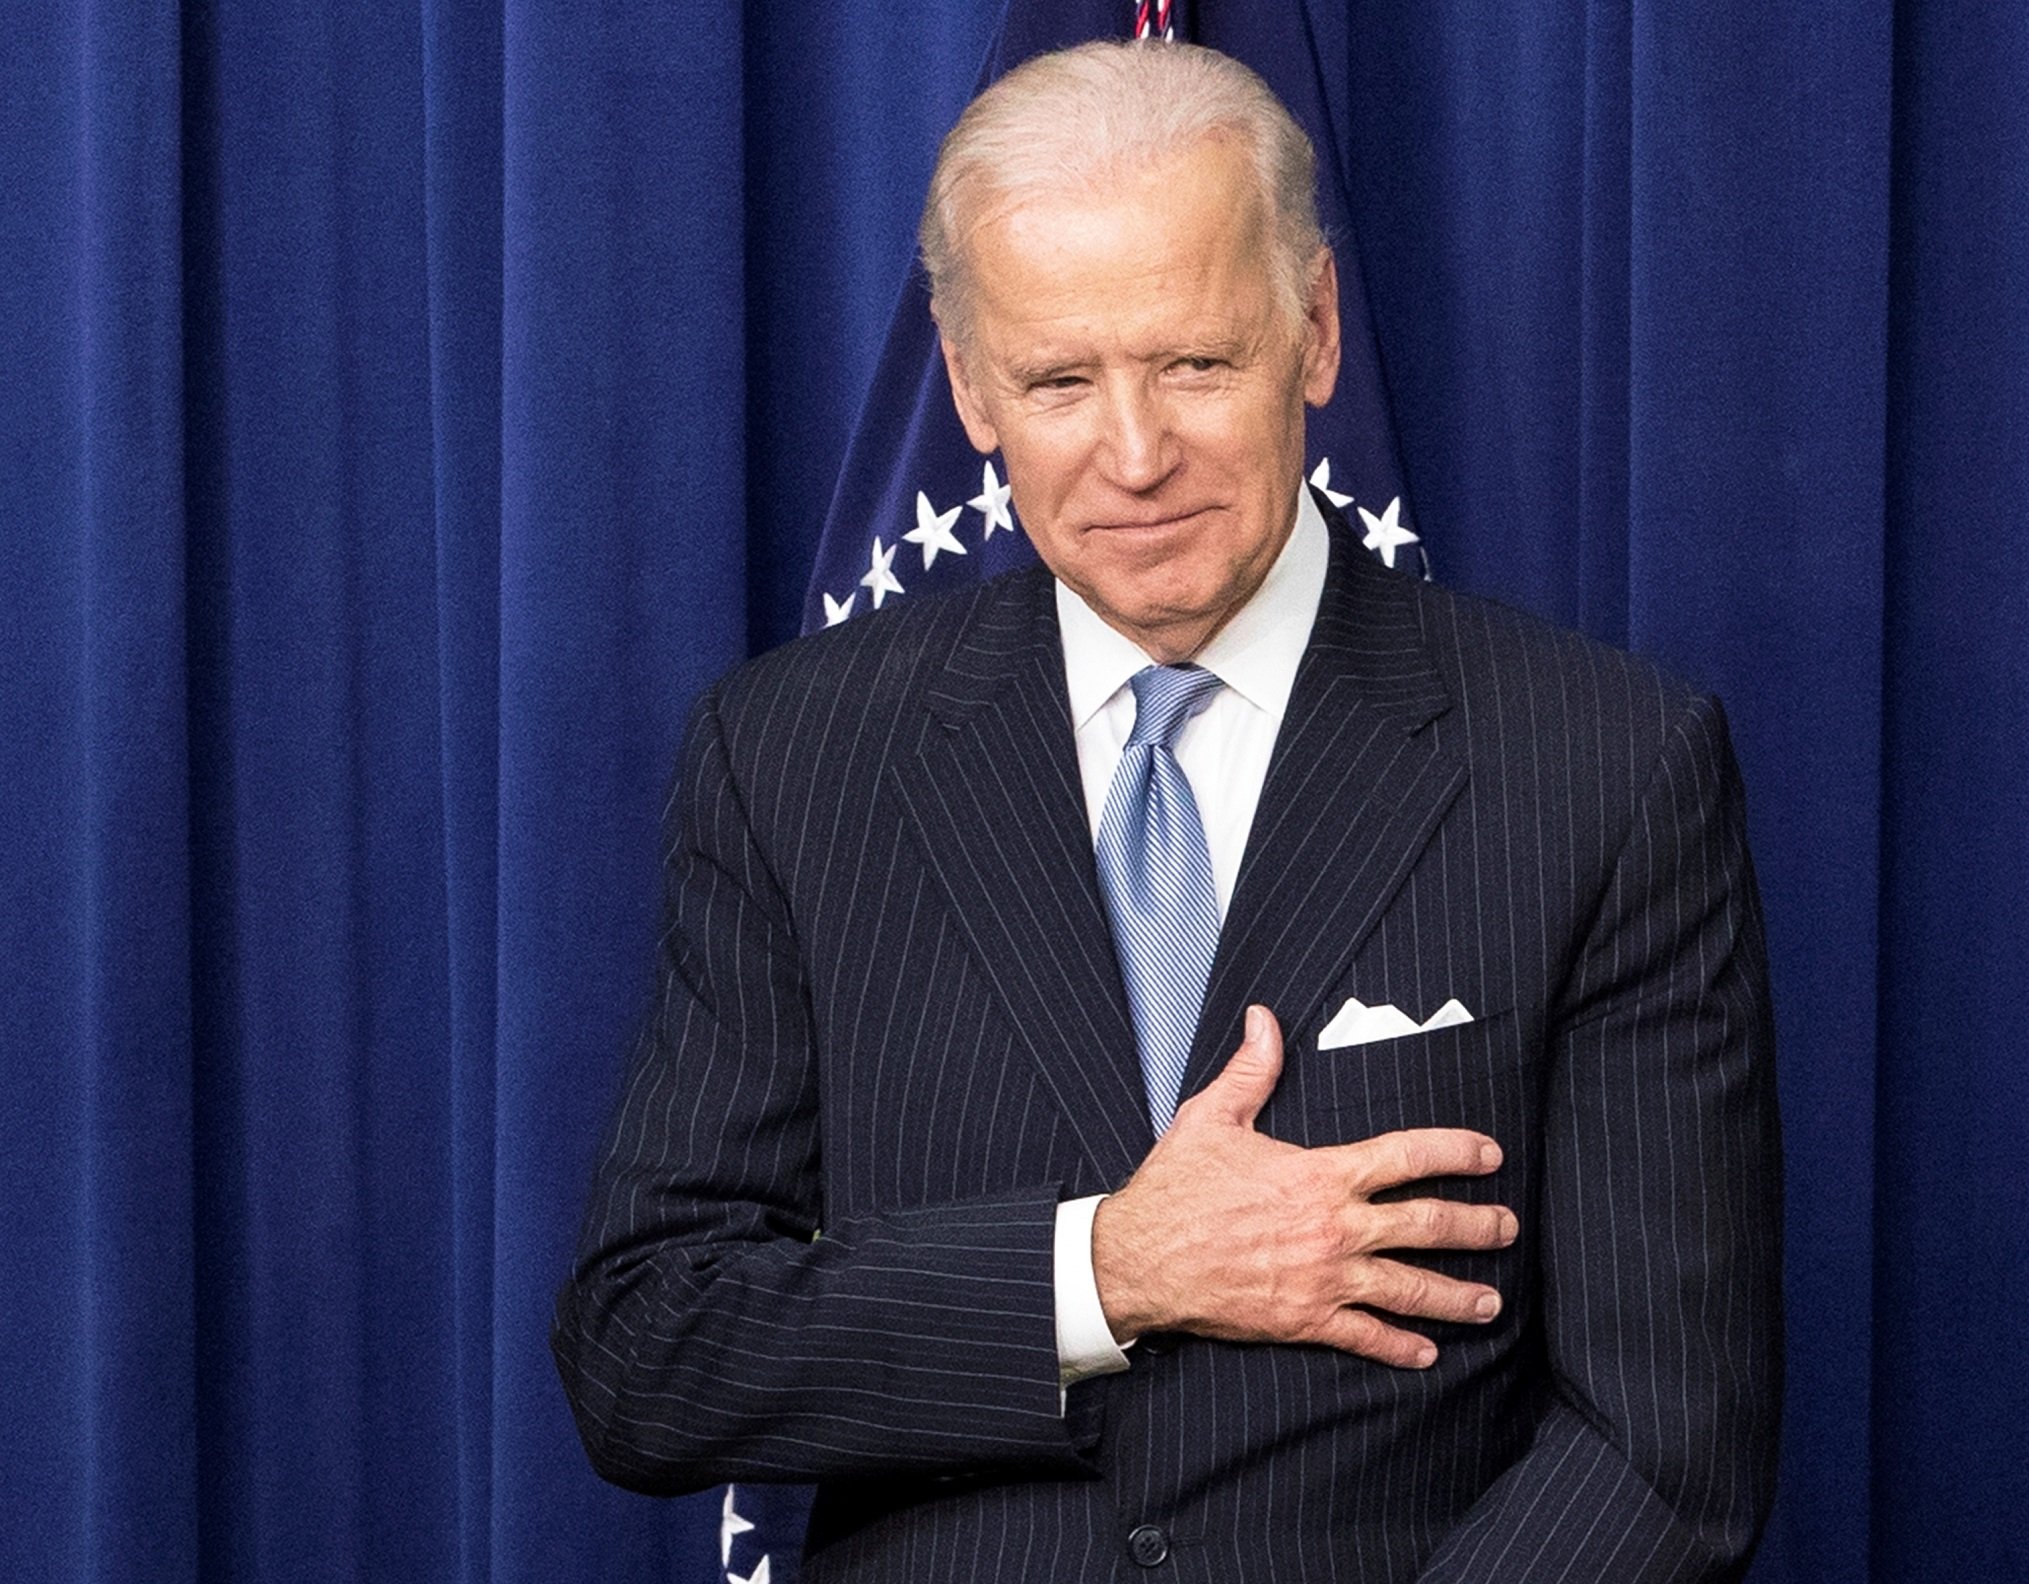 Biden creu estar en "bon camí" per guanyar i demana "paciència"